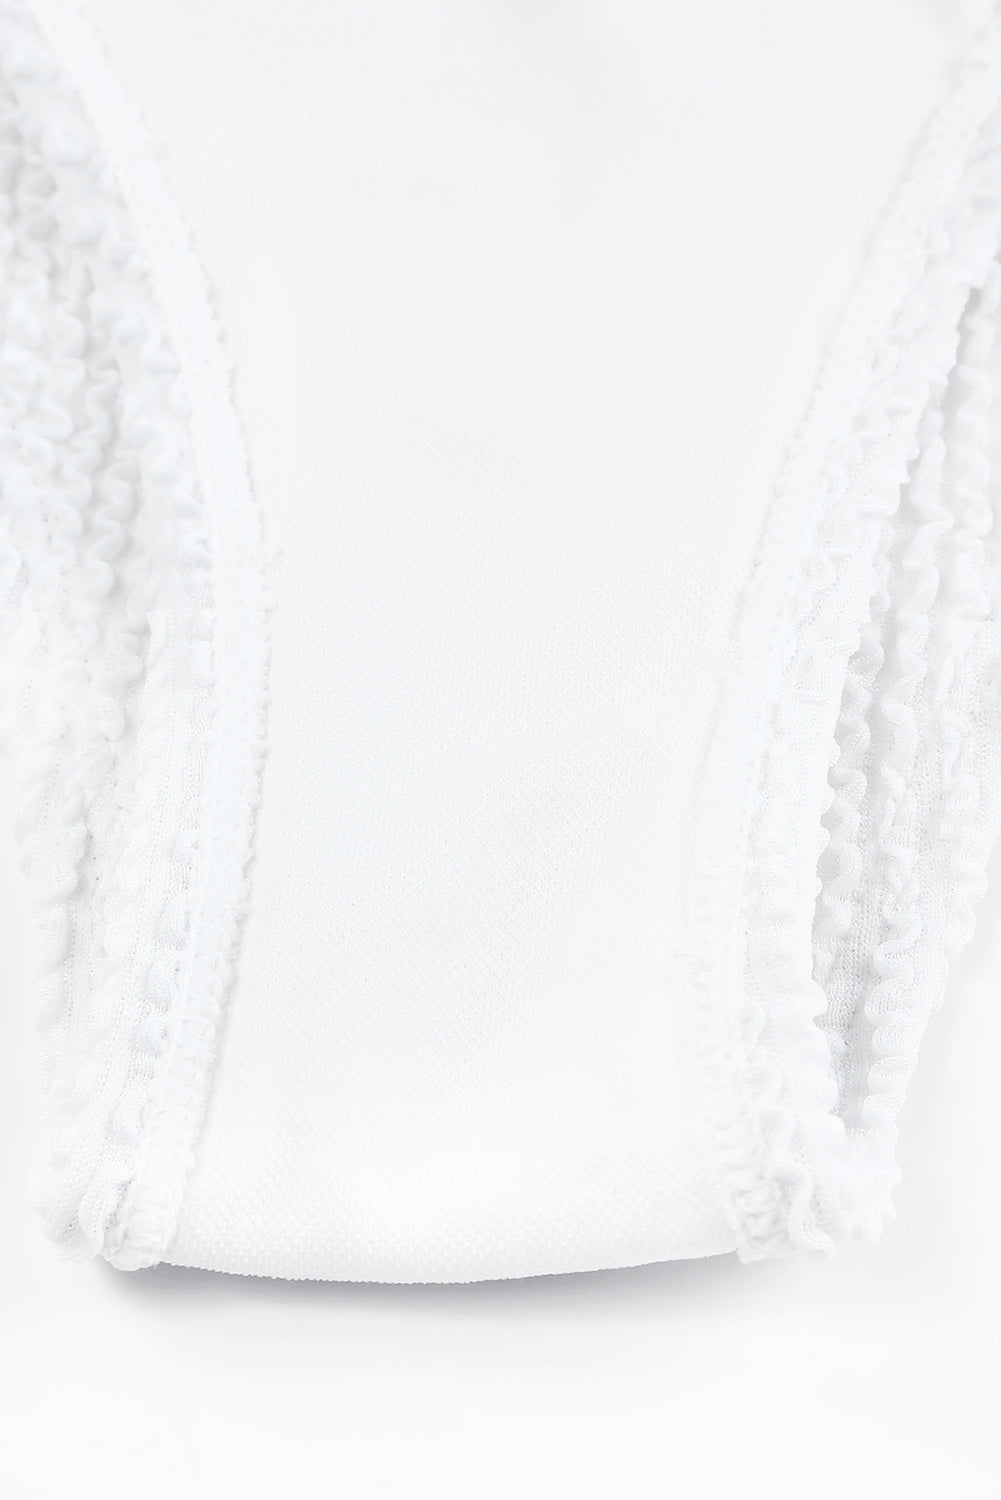 Costume da bagno bikini monospalla asimmetrico strutturato bianco increspato